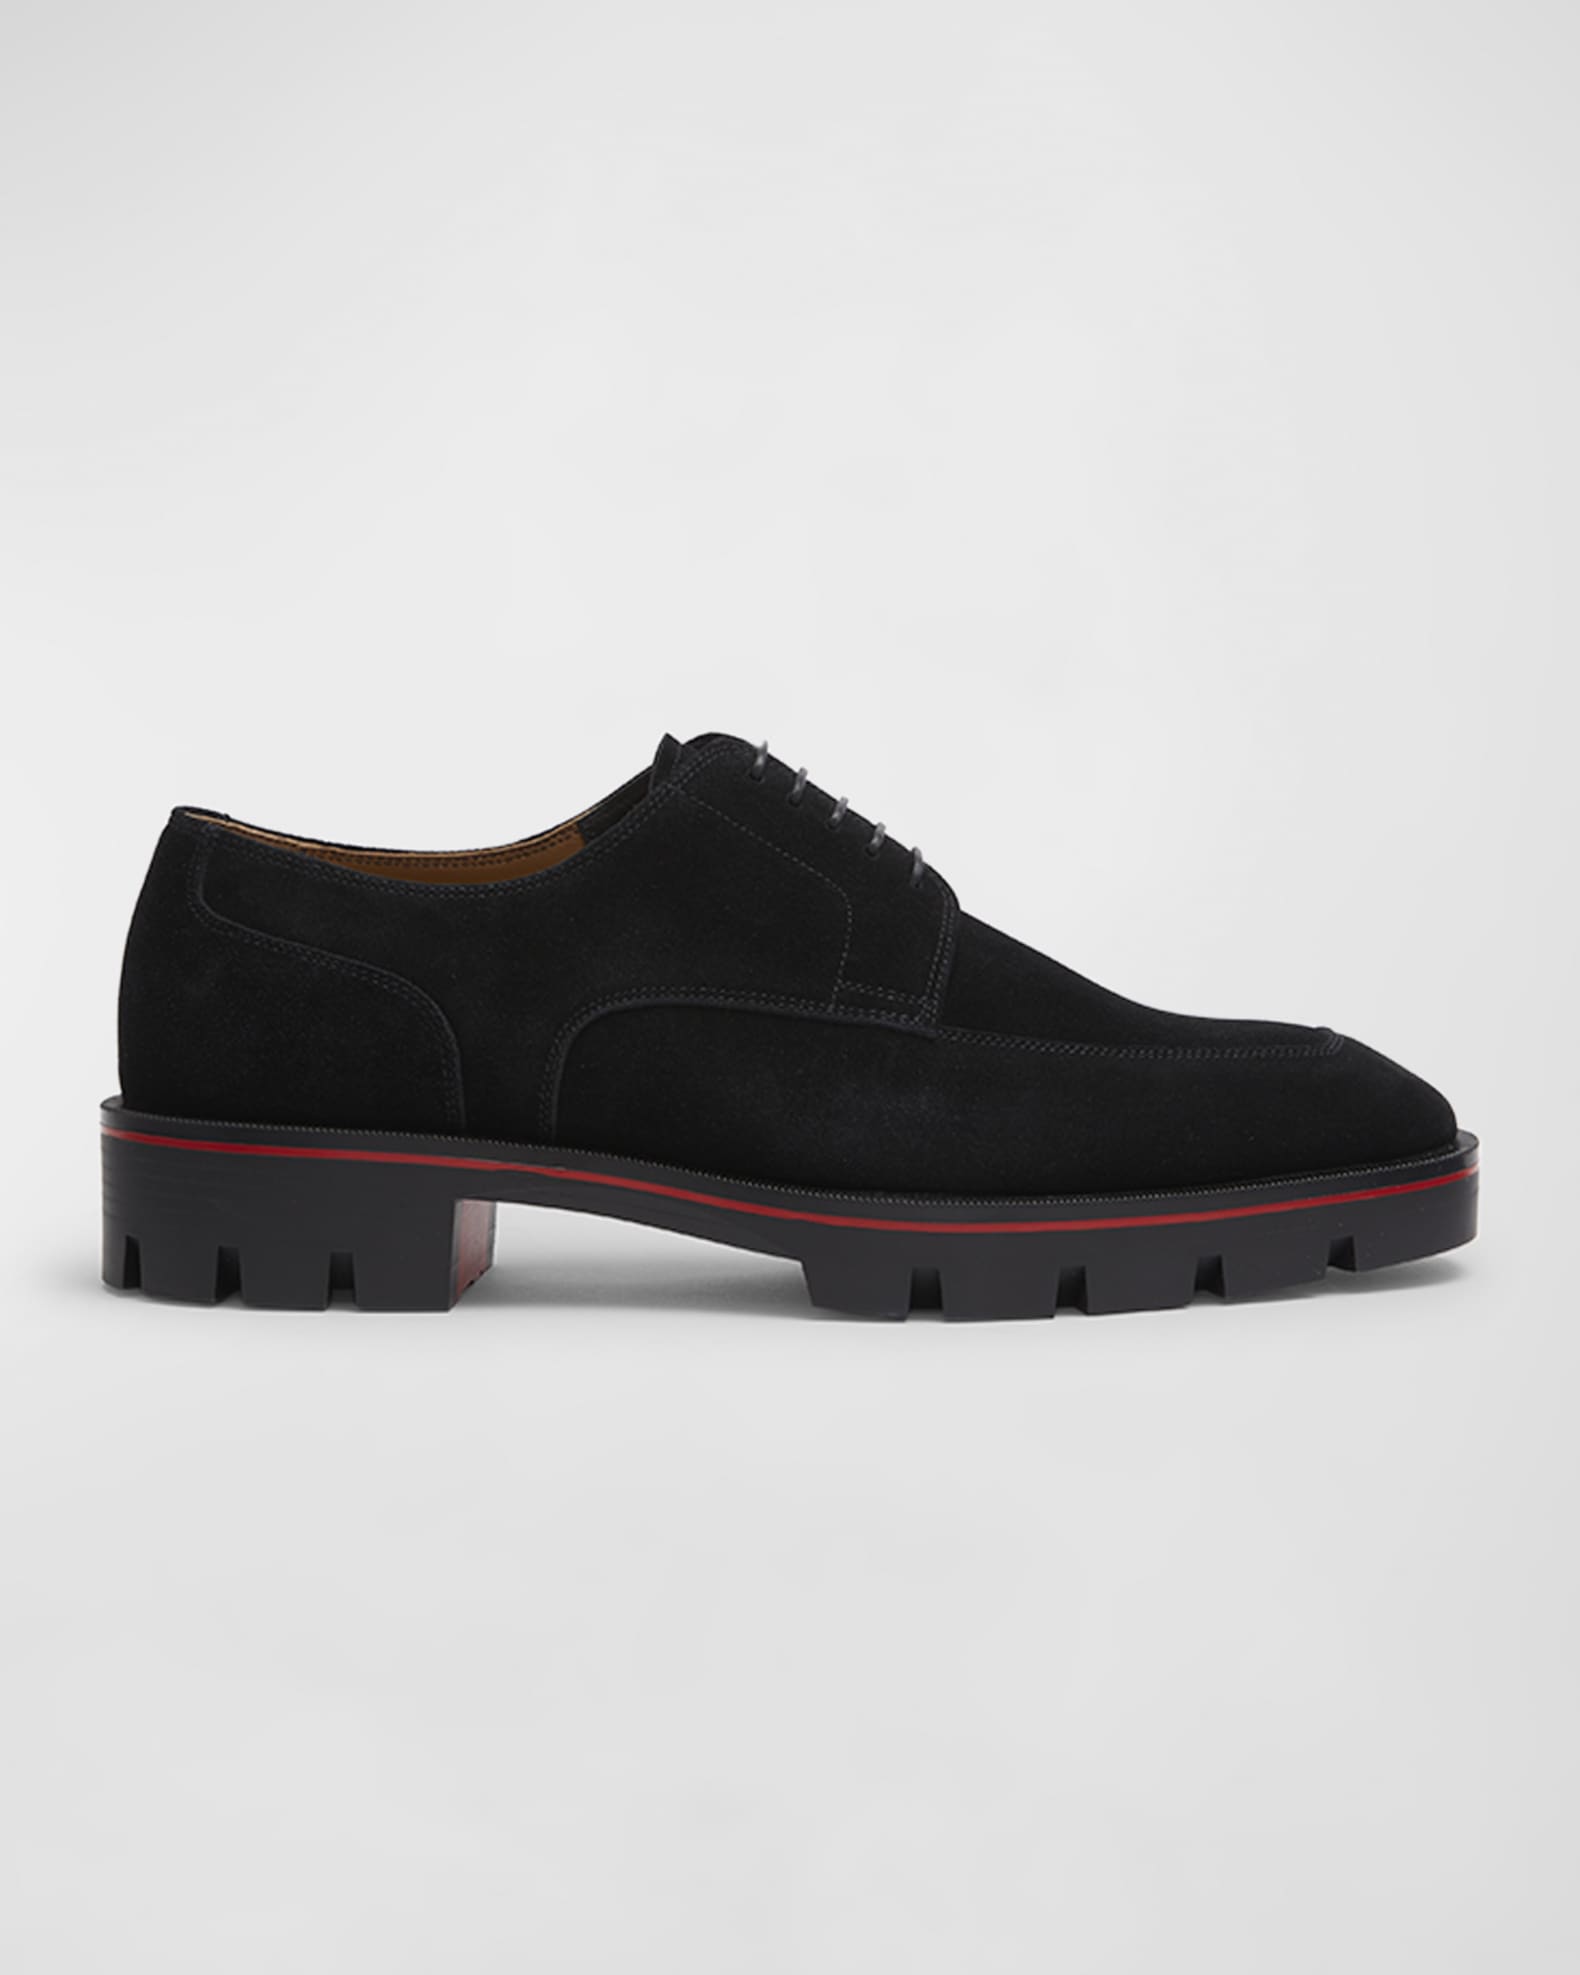 Christian Louboutin Men's Davisol Lug Sole Derby Shoes | Neiman Marcus